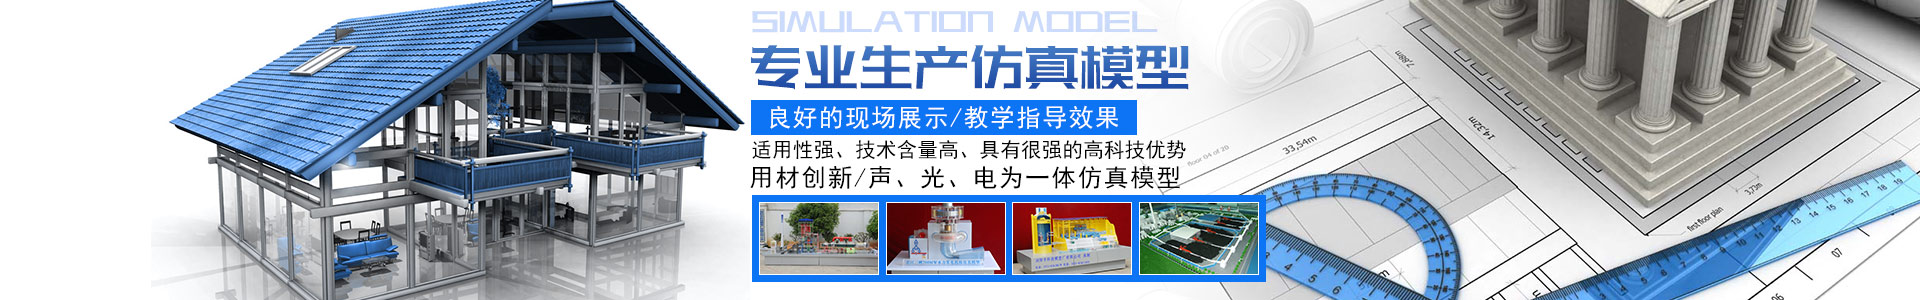 浏阳市工务局 - 浏阳教学模型|浏阳展览模型|浏阳科技馆模型